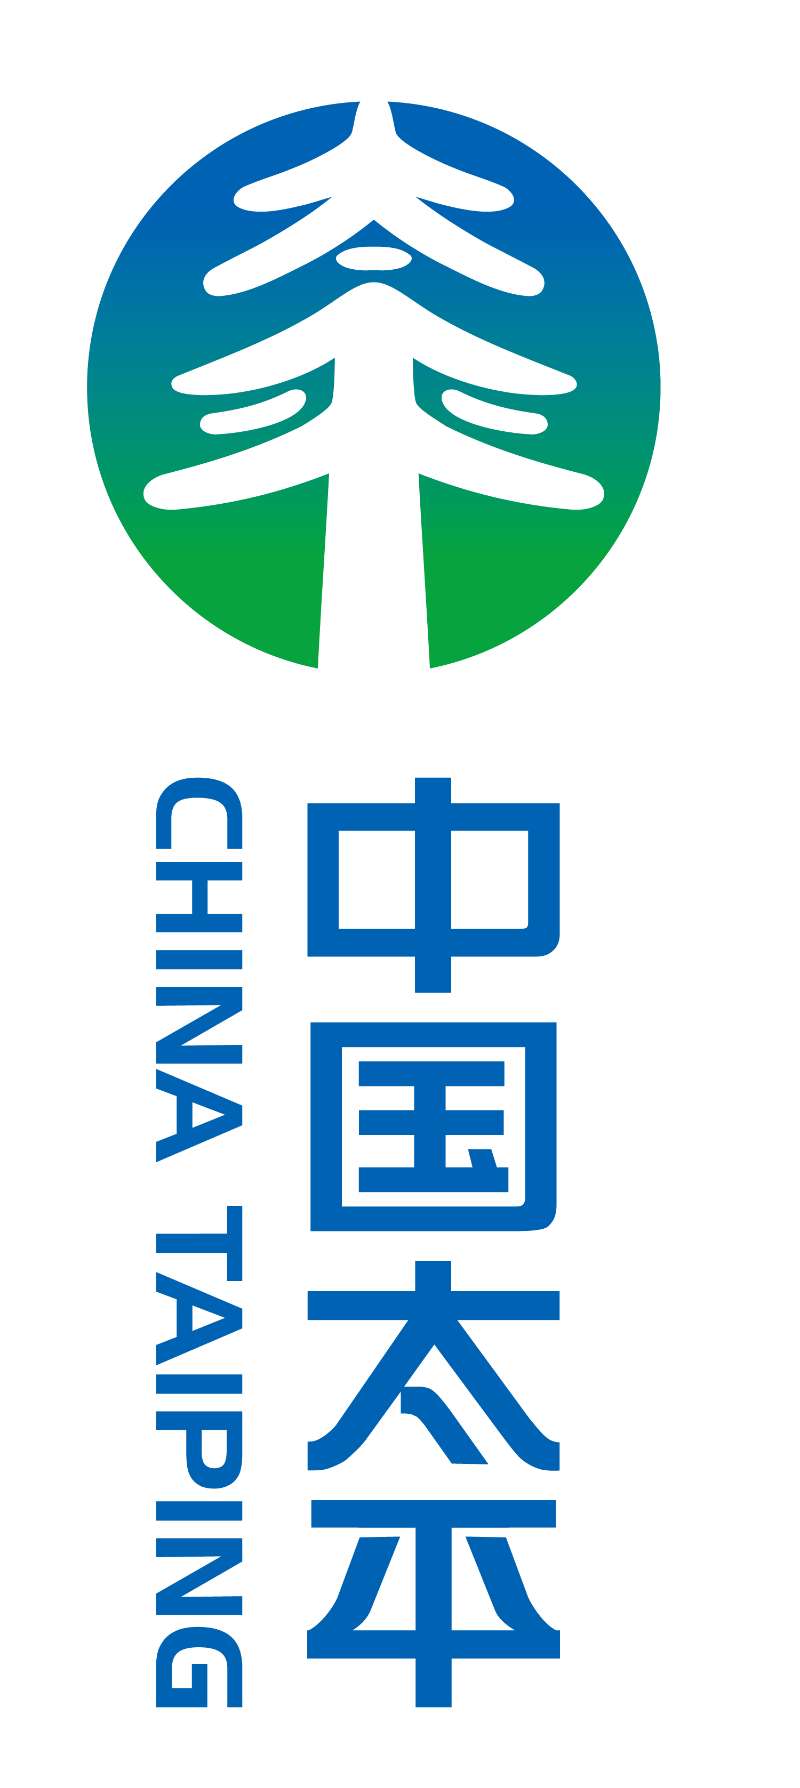 中国太平图标图片